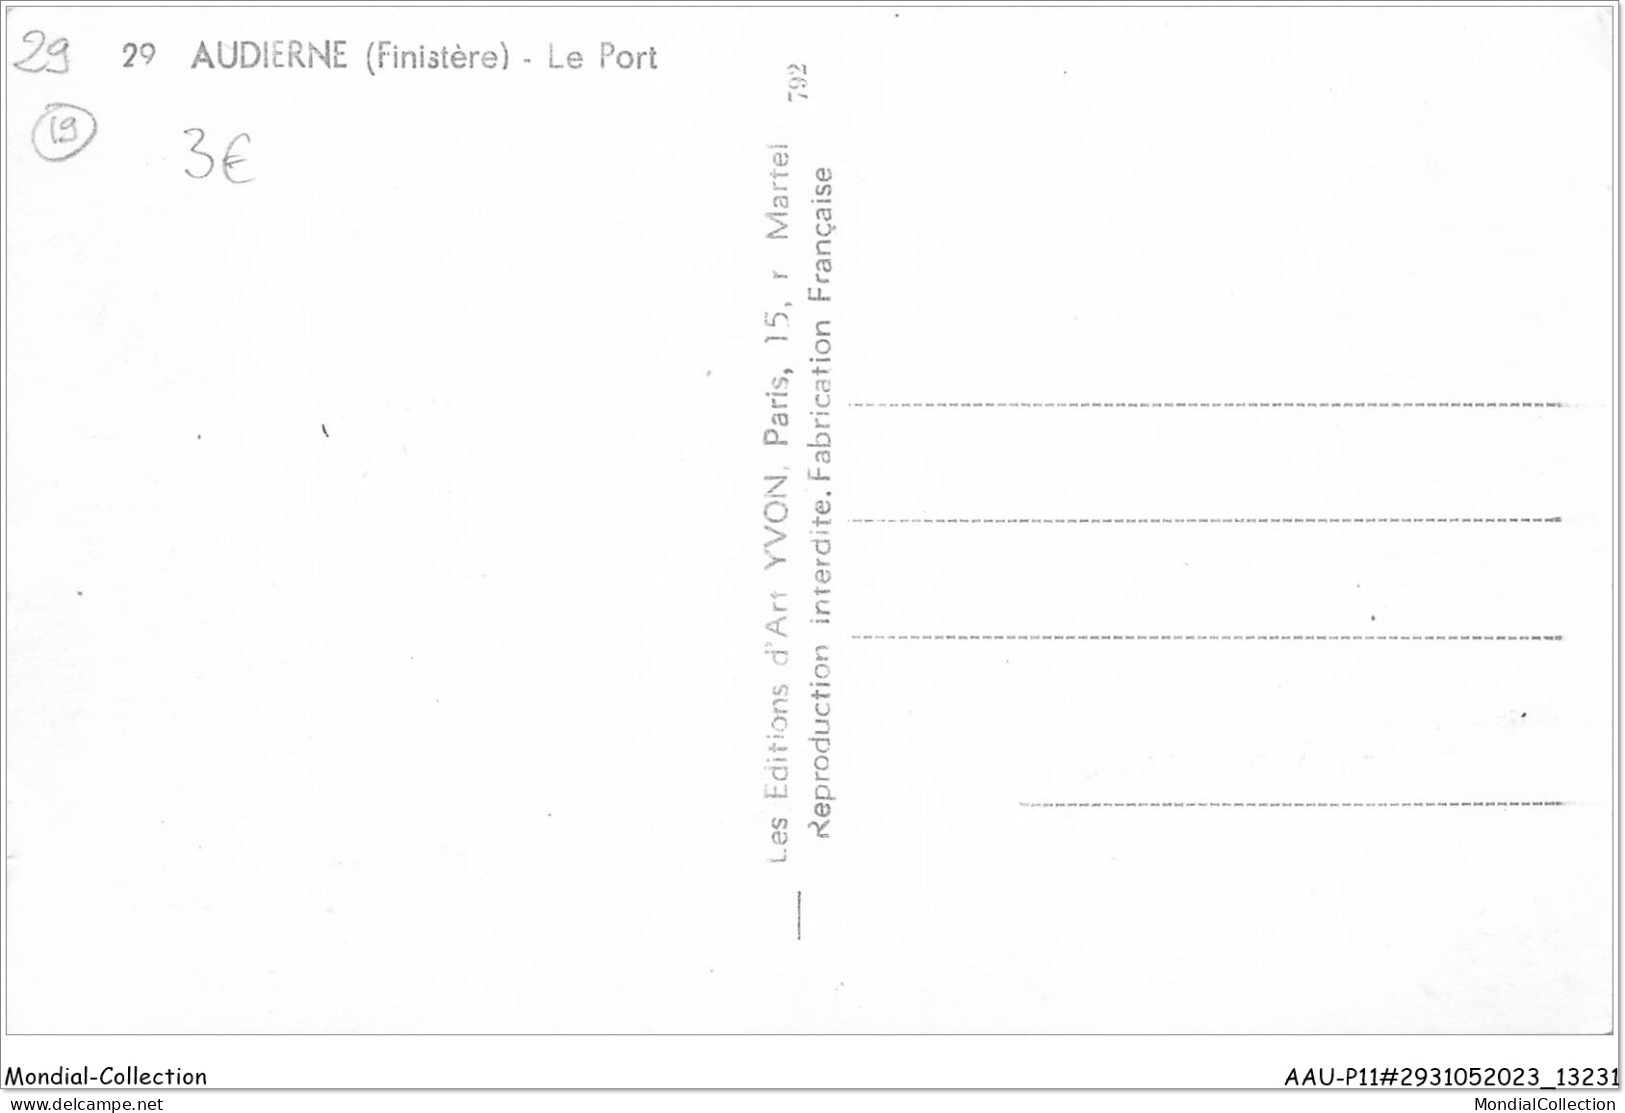 AAUP11-29-1036 - AUDIERNE - Le Port - Audierne